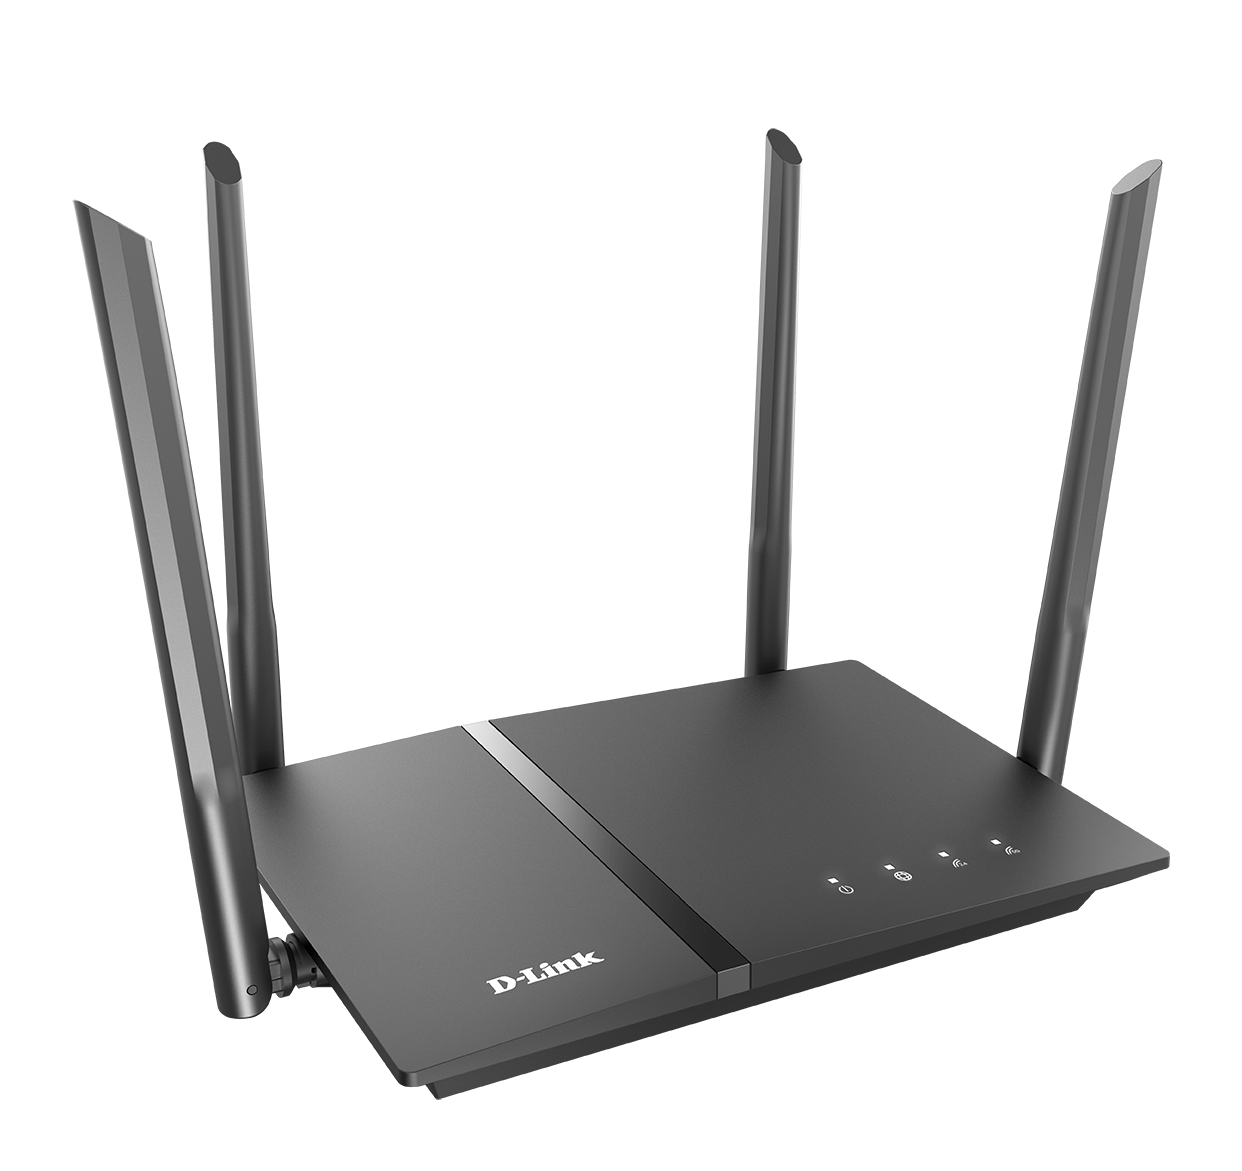 D-Link Wireless AC1200 Gigabit Router with High-Gain Antennas - DIR-822